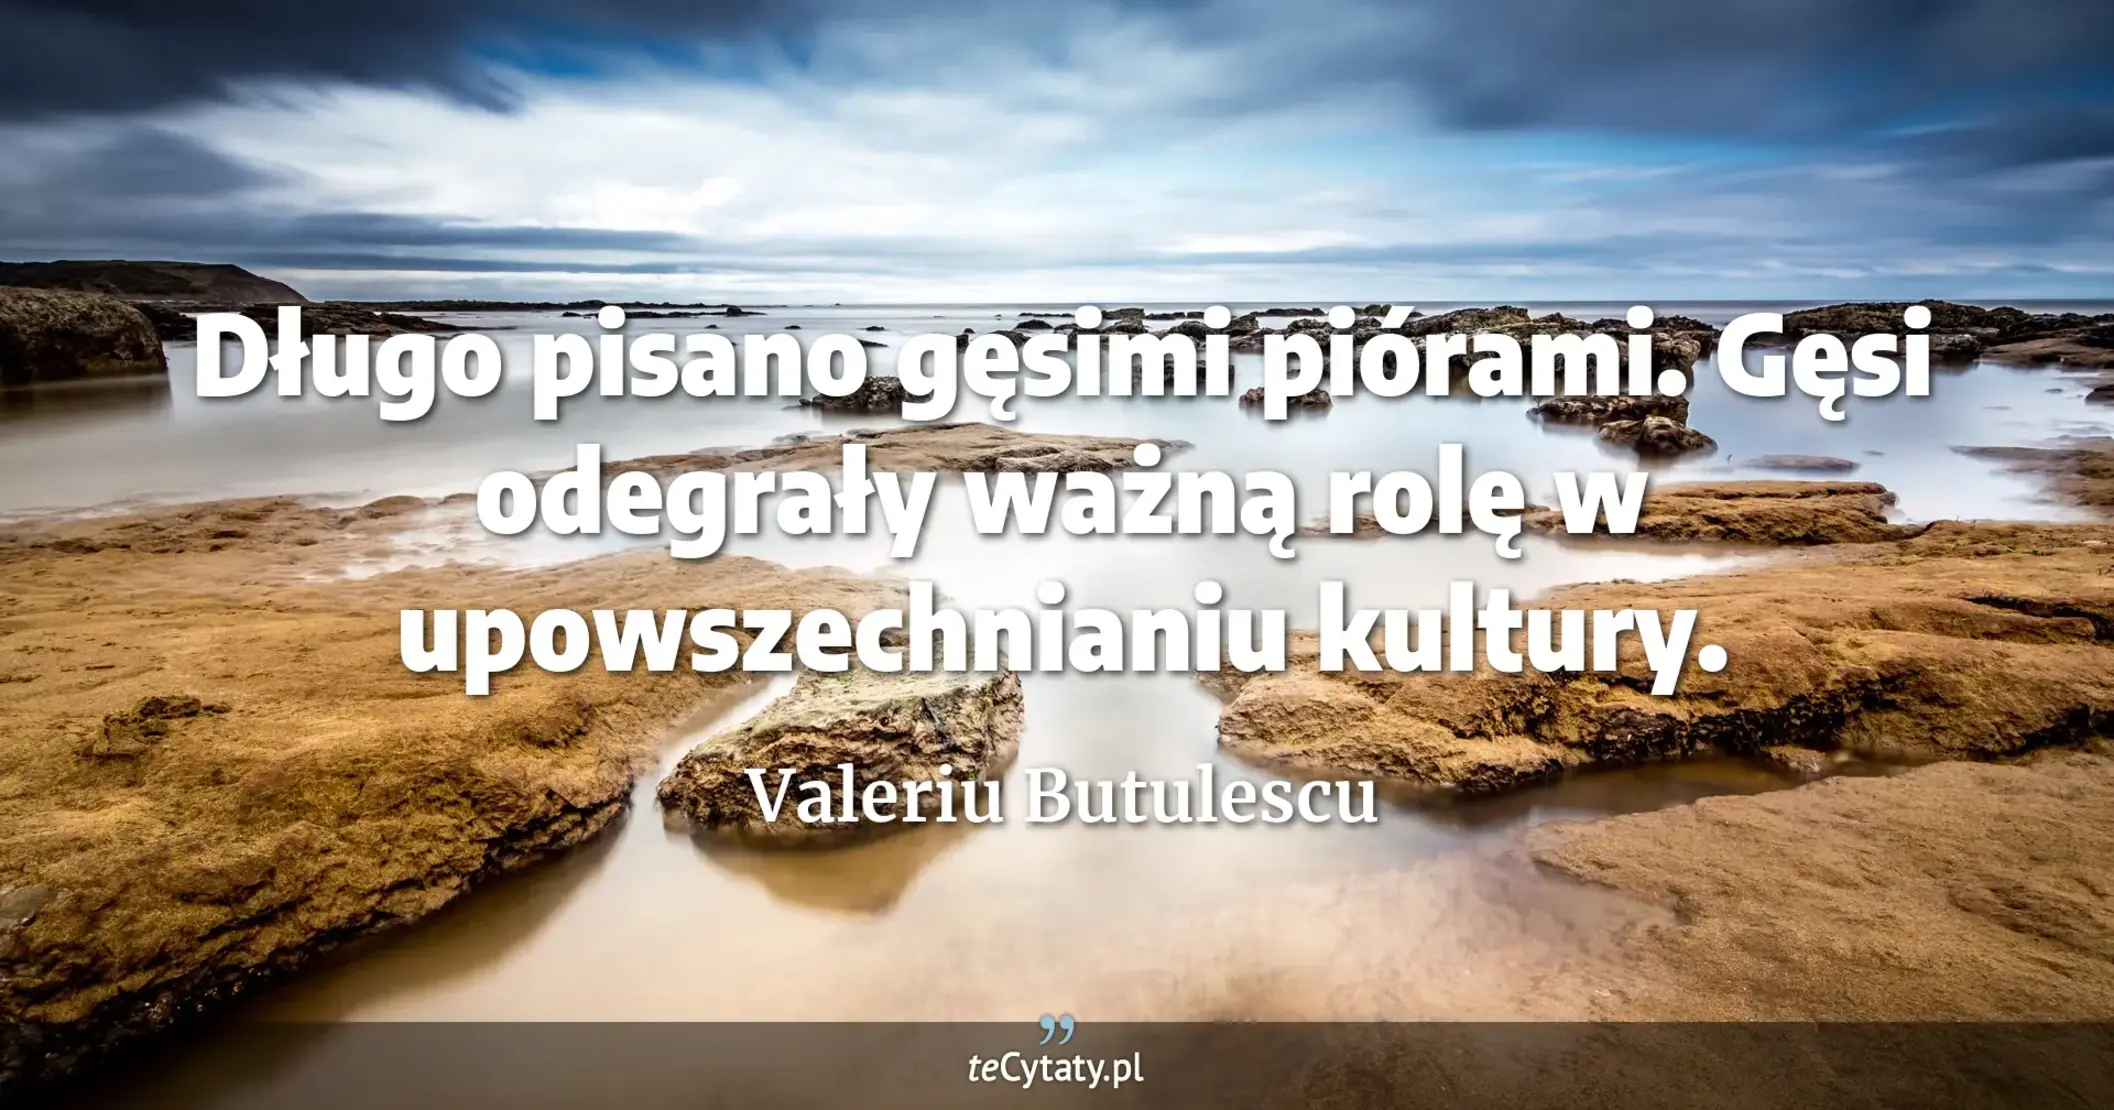 Długo pisano gęsimi piórami. Gęsi odegrały ważną rolę w upowszechnianiu kultury. - Valeriu Butulescu